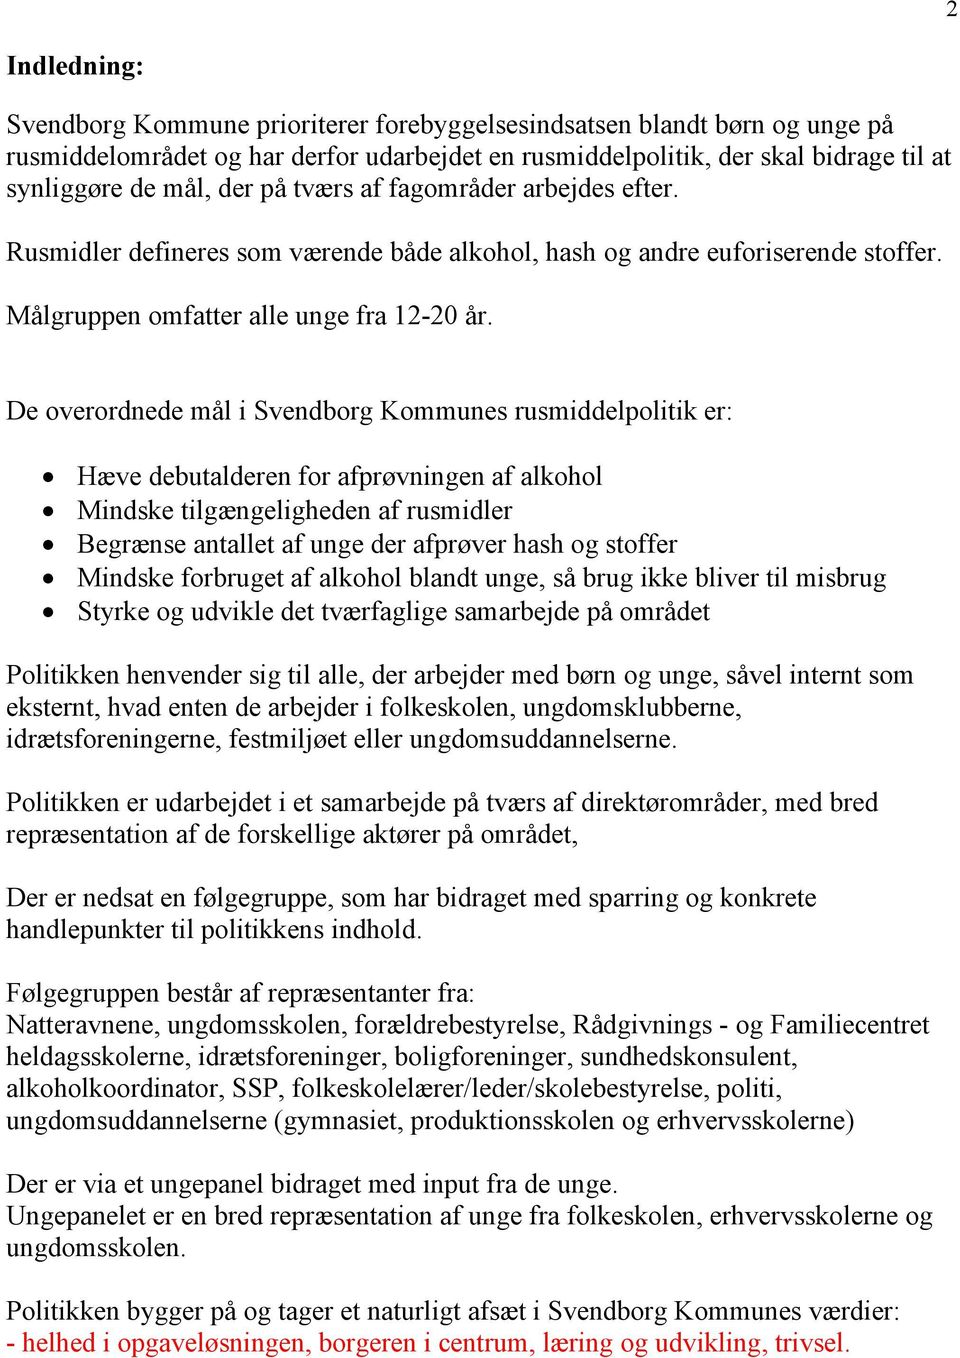 De overordnede mål i Svendborg Kommunes rusmiddelpolitik er: Hæve debutalderen for afprøvningen af alkohol Mindske tilgængeligheden af rusmidler Begrænse antallet af unge der afprøver hash og stoffer